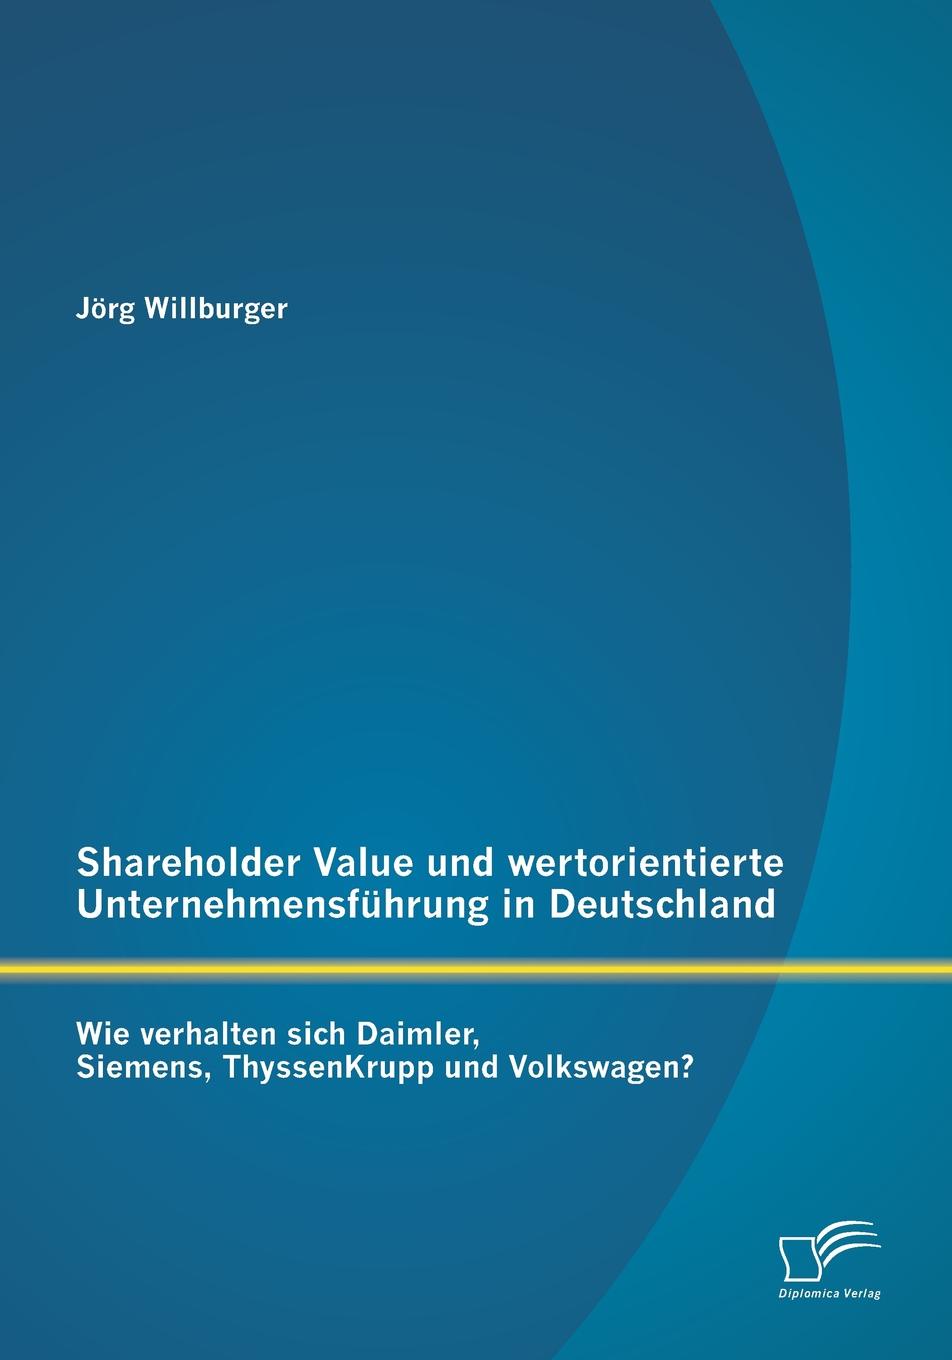 Shareholder Value und wertorientierte Unternehmensfuhrung in Deutschland. Wie verhalten sich Daimler, Siemens, ThyssenKrupp und Volkswagen.